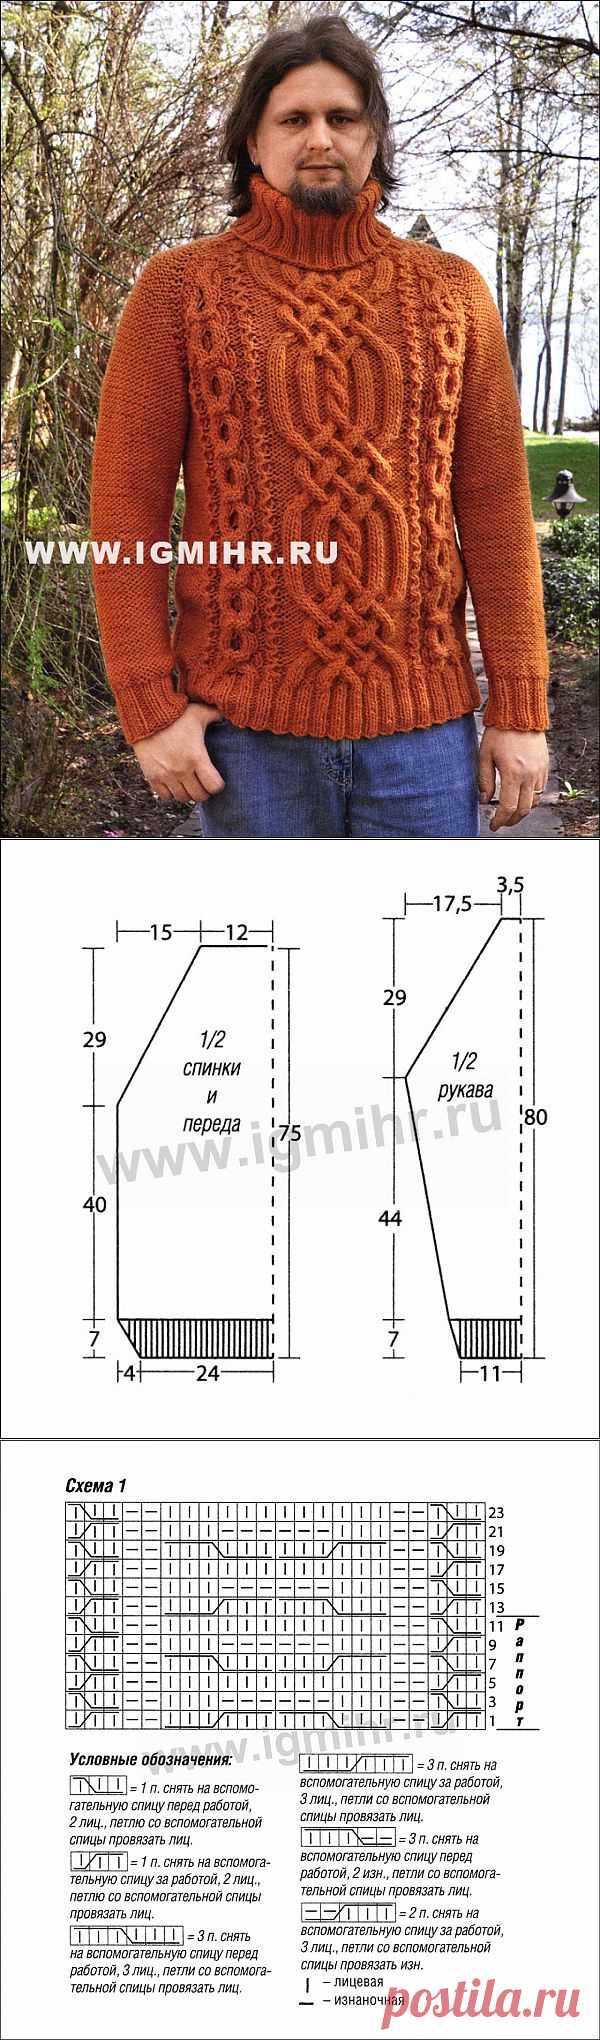 Классика зимнего мужского трикотажа. Темно-оранжевый свитер с аранскими узорами. Спицы